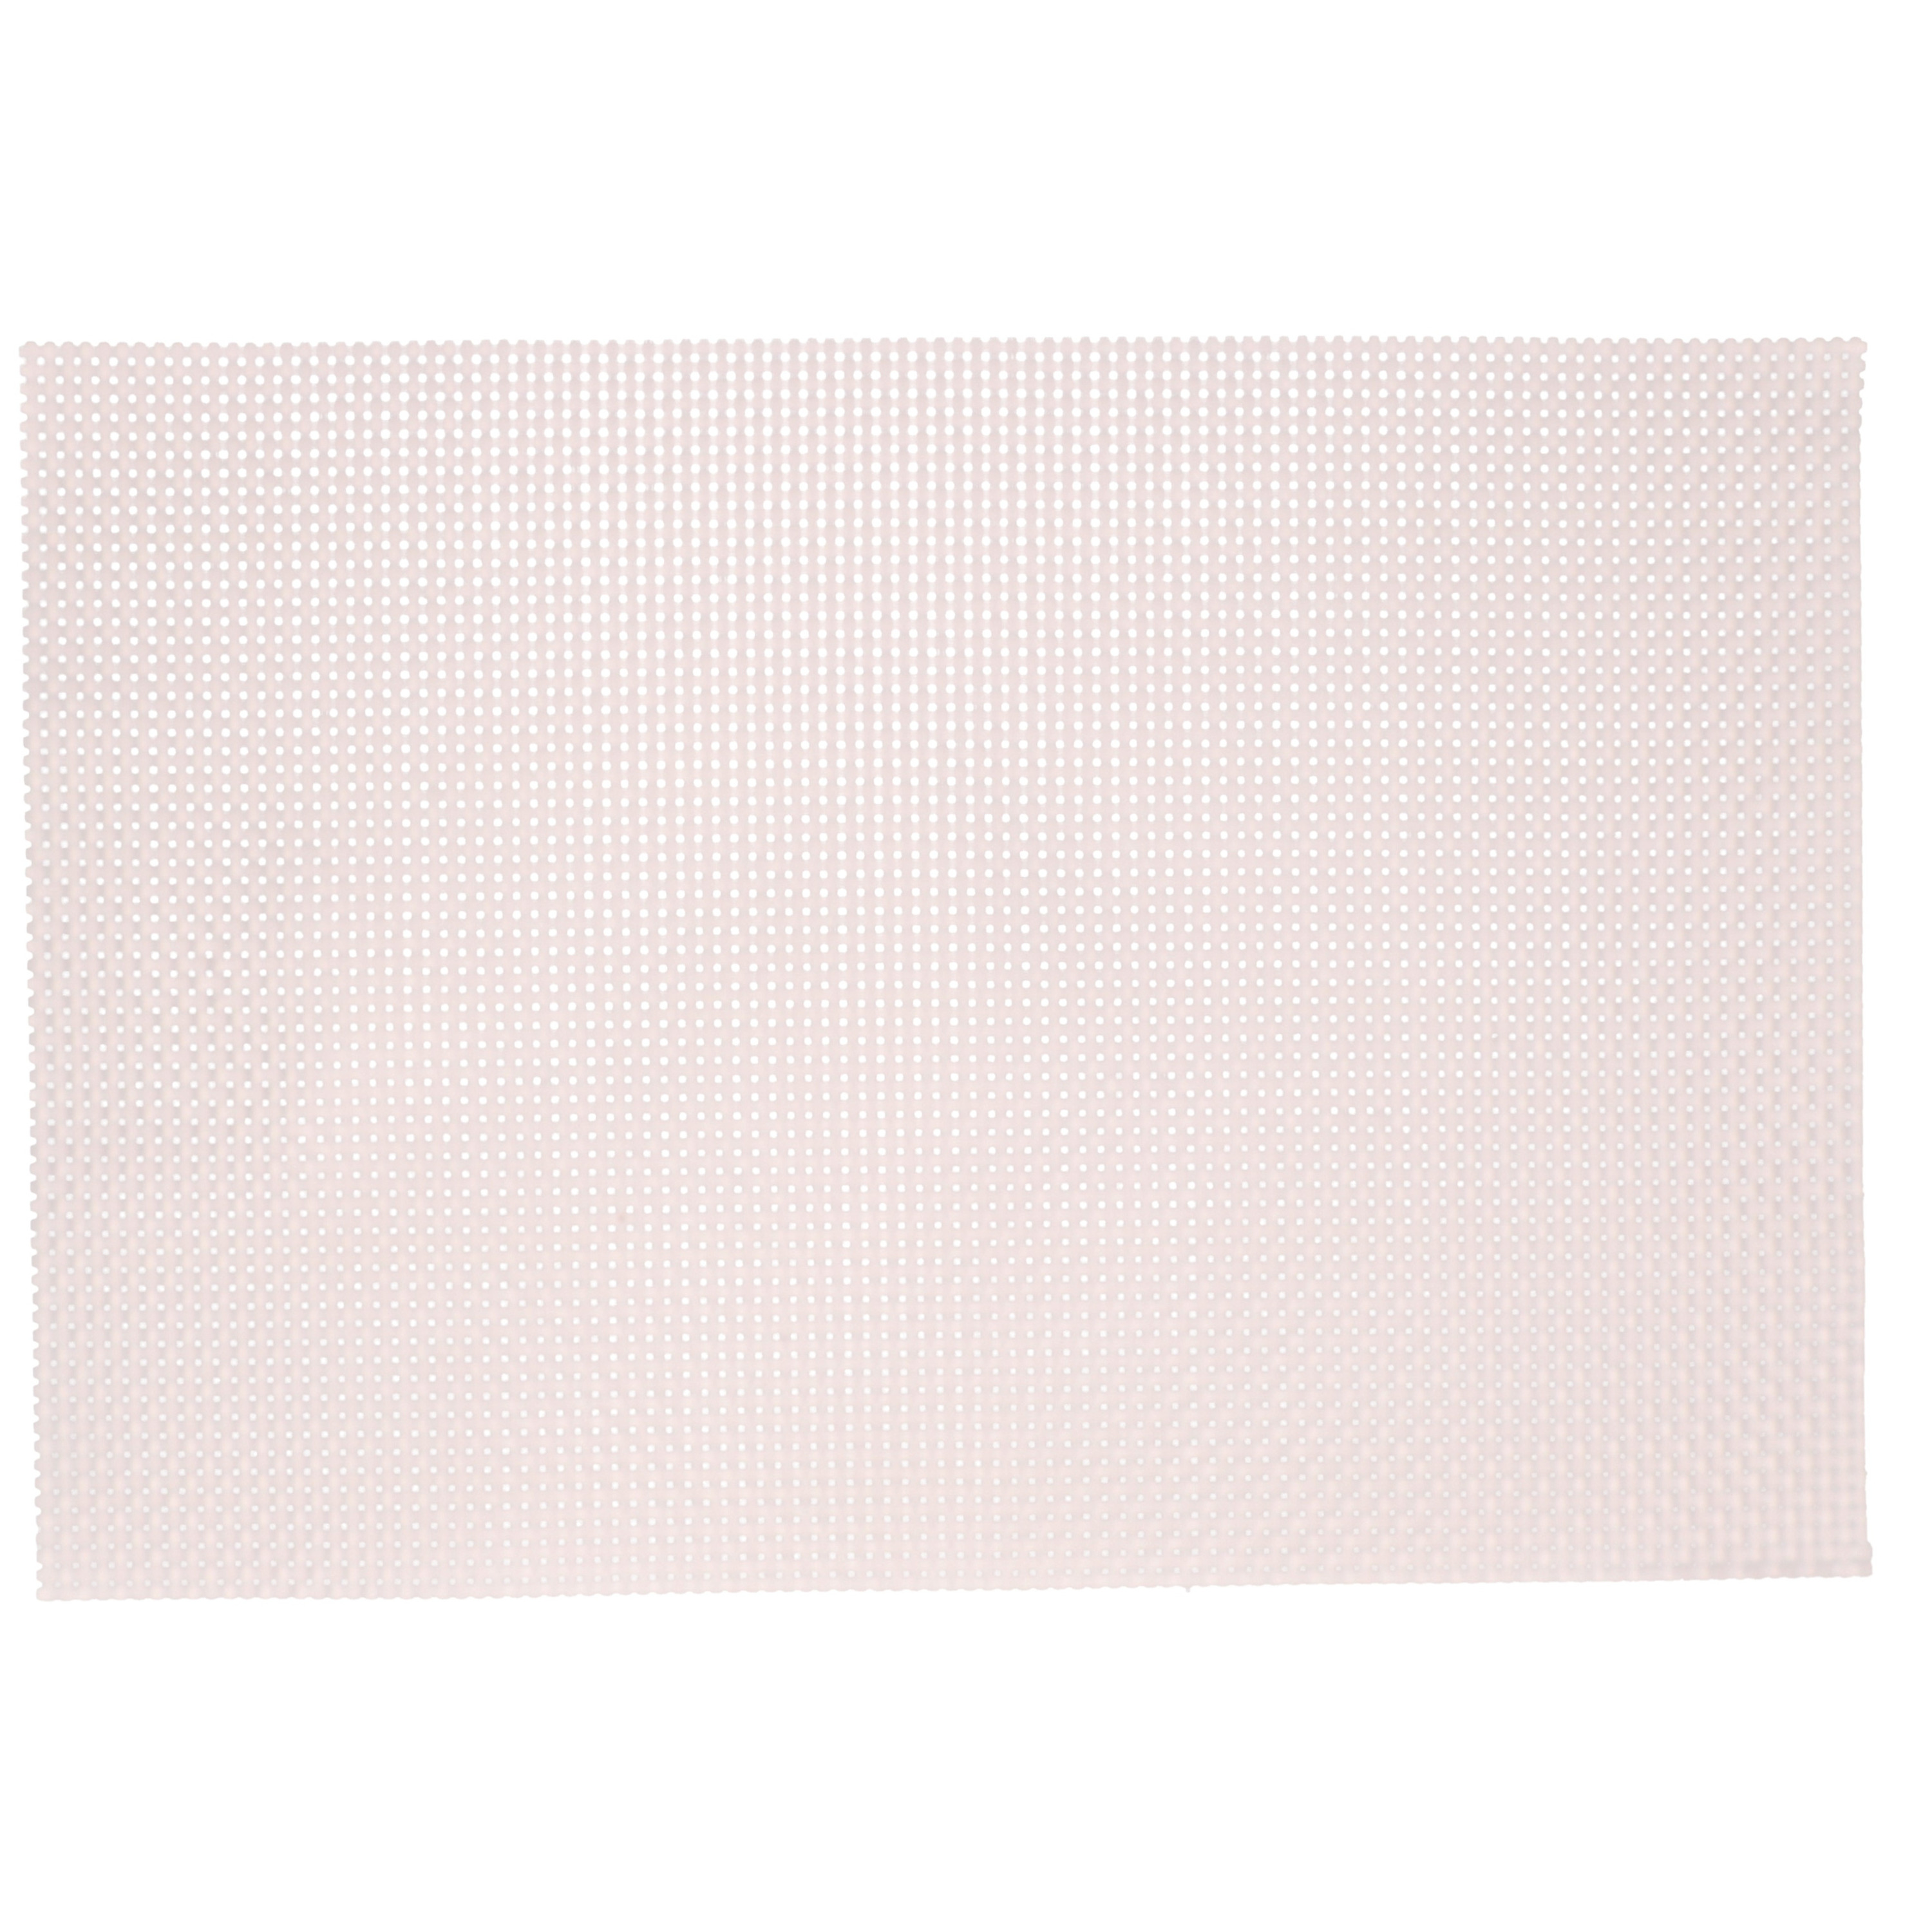 1x Rechthoekige placemats lichtroze parelmoer glans geweven 29 x 43 cm